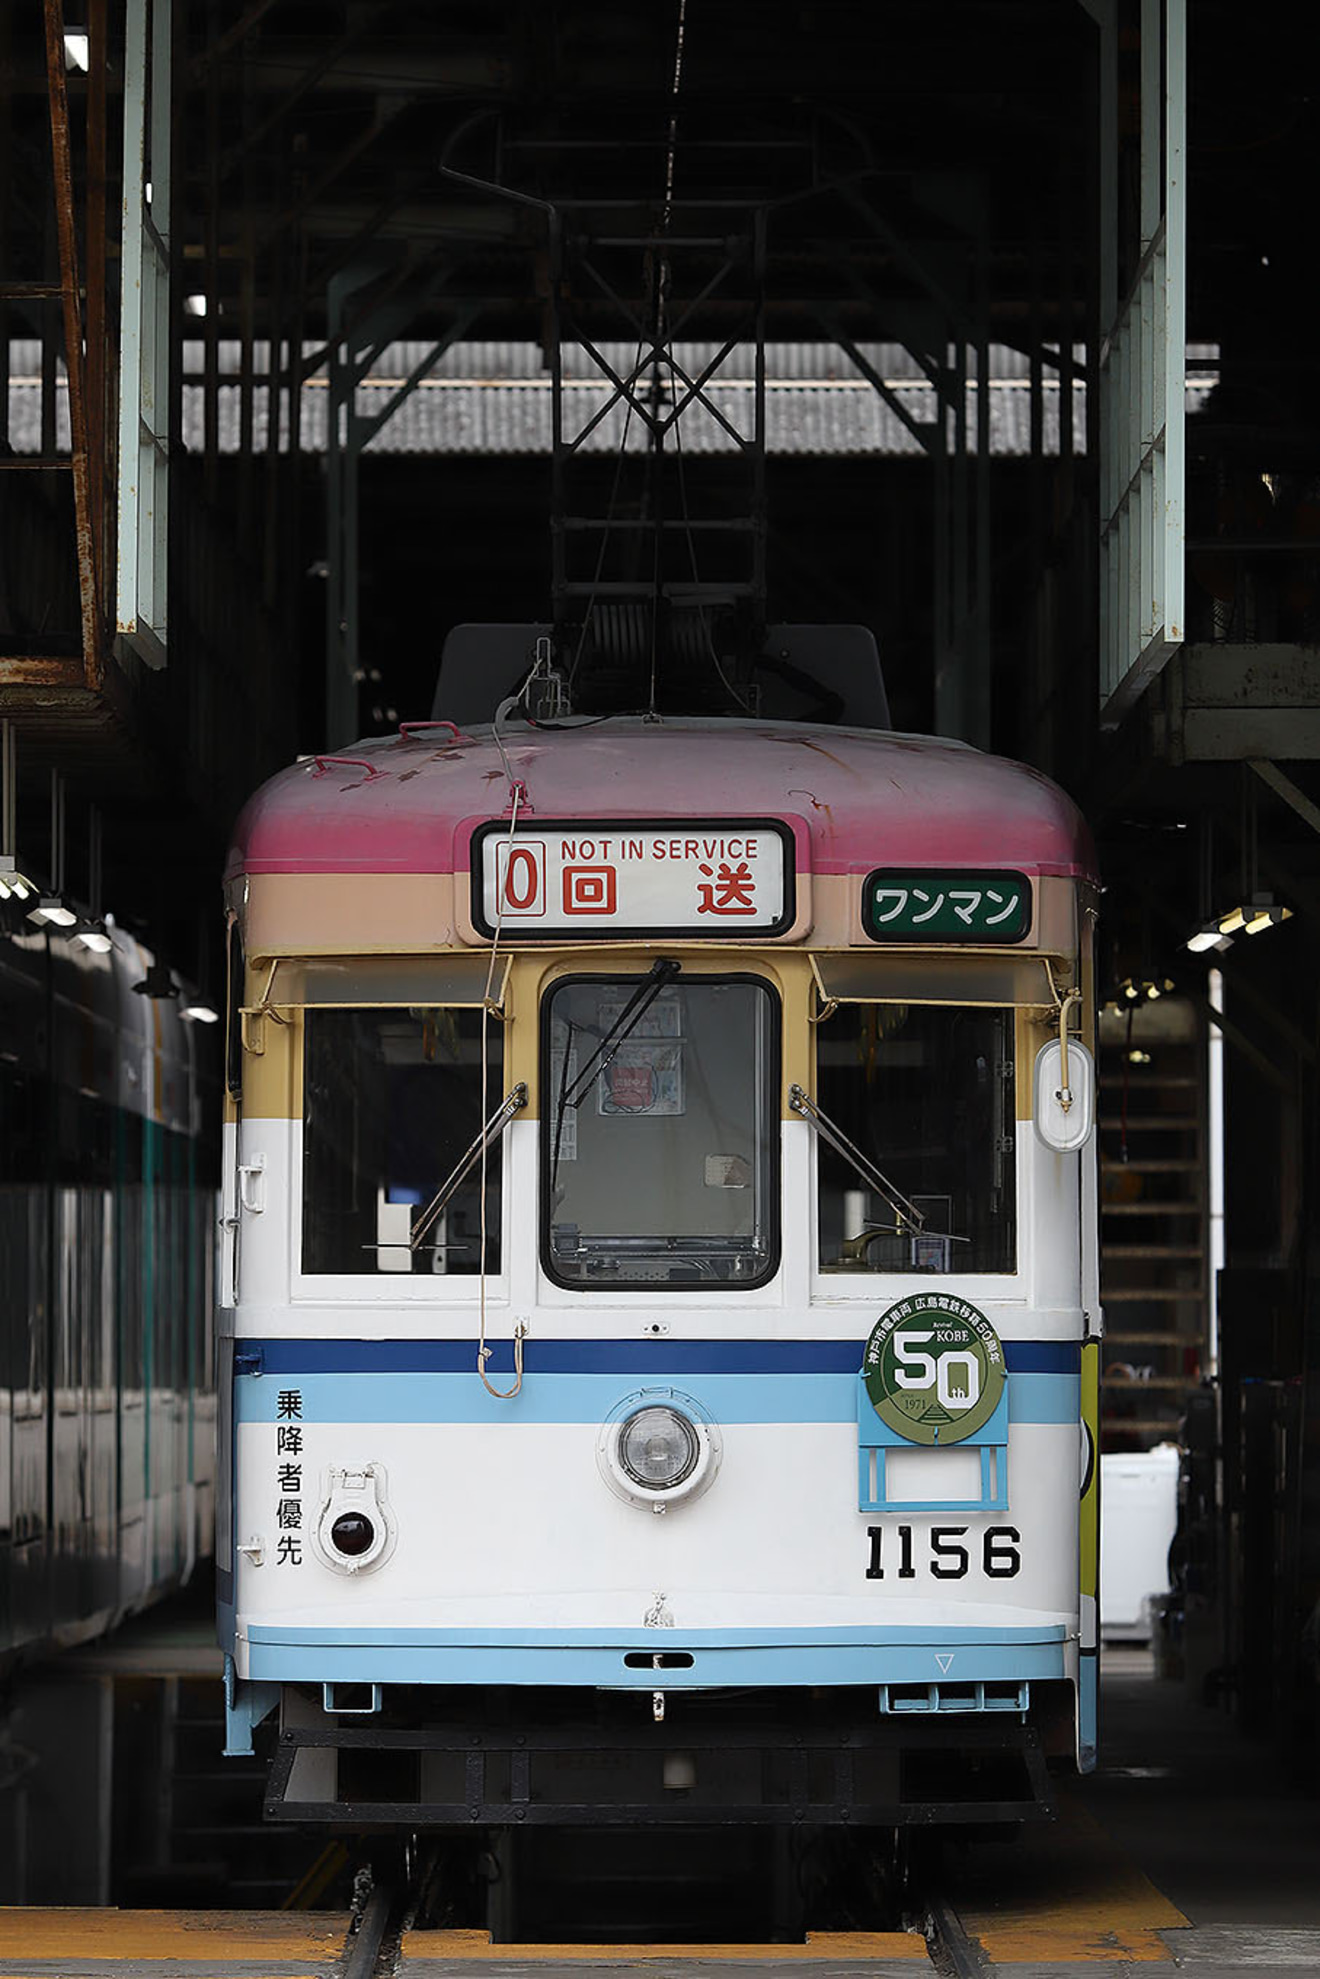 【広電】広島電鉄の貸切乗車を楽しむ日帰りバスツアーの拡大写真